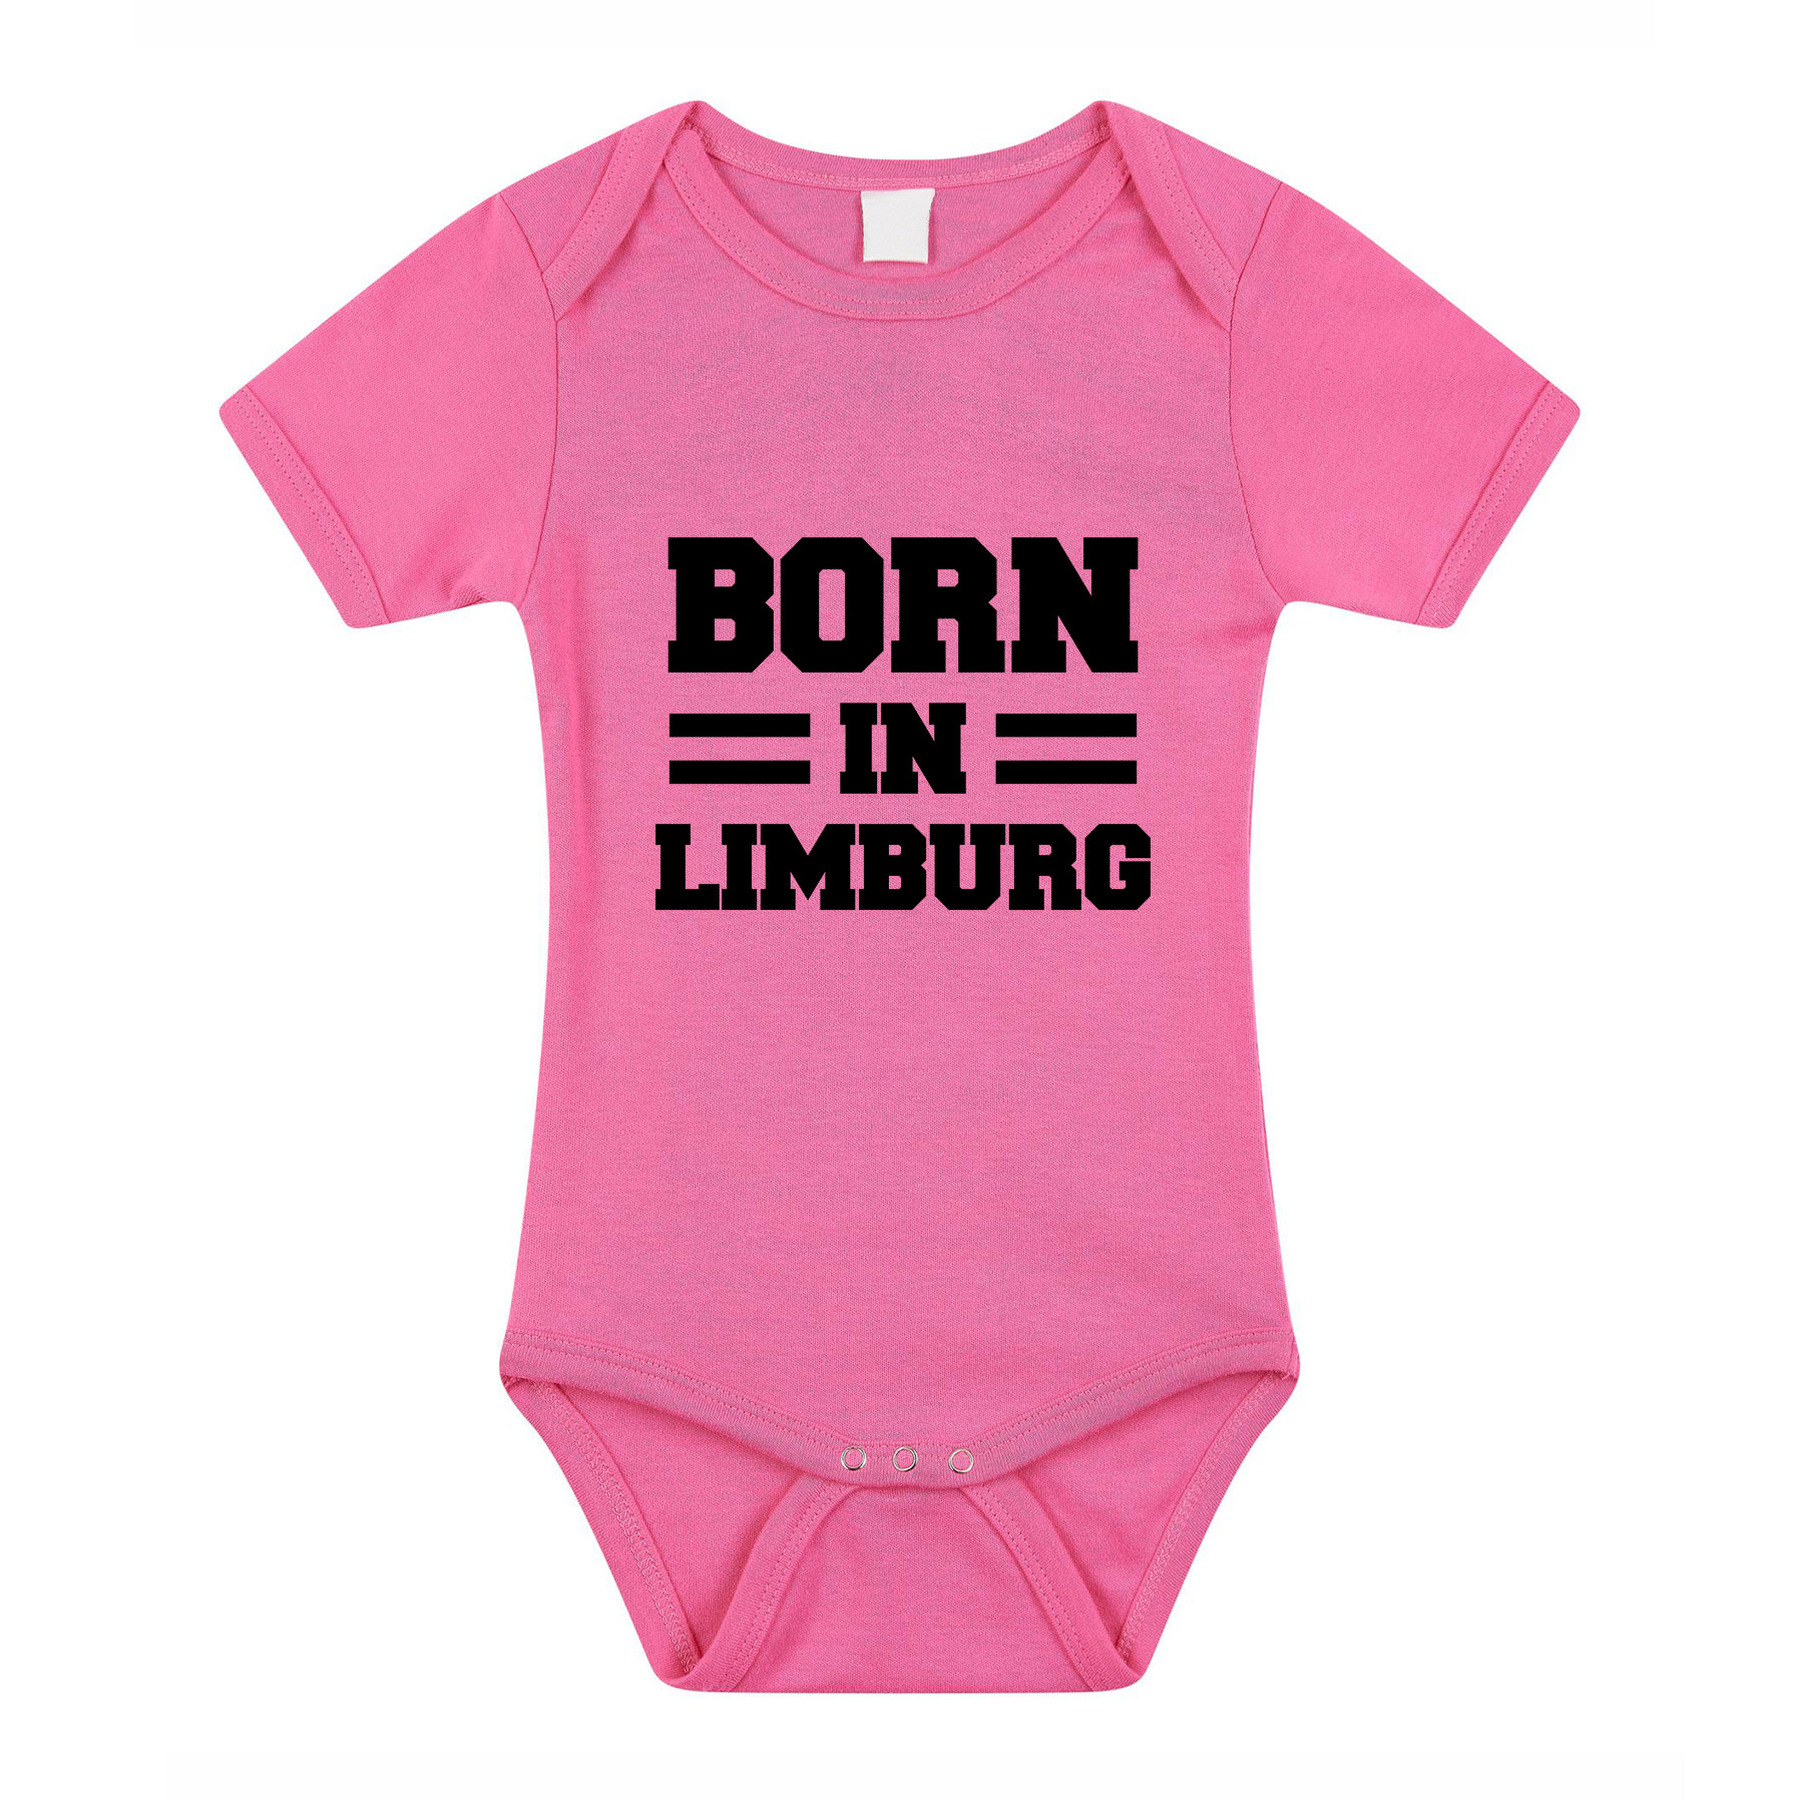 Born in Limburg cadeau baby rompertje roze meisjes